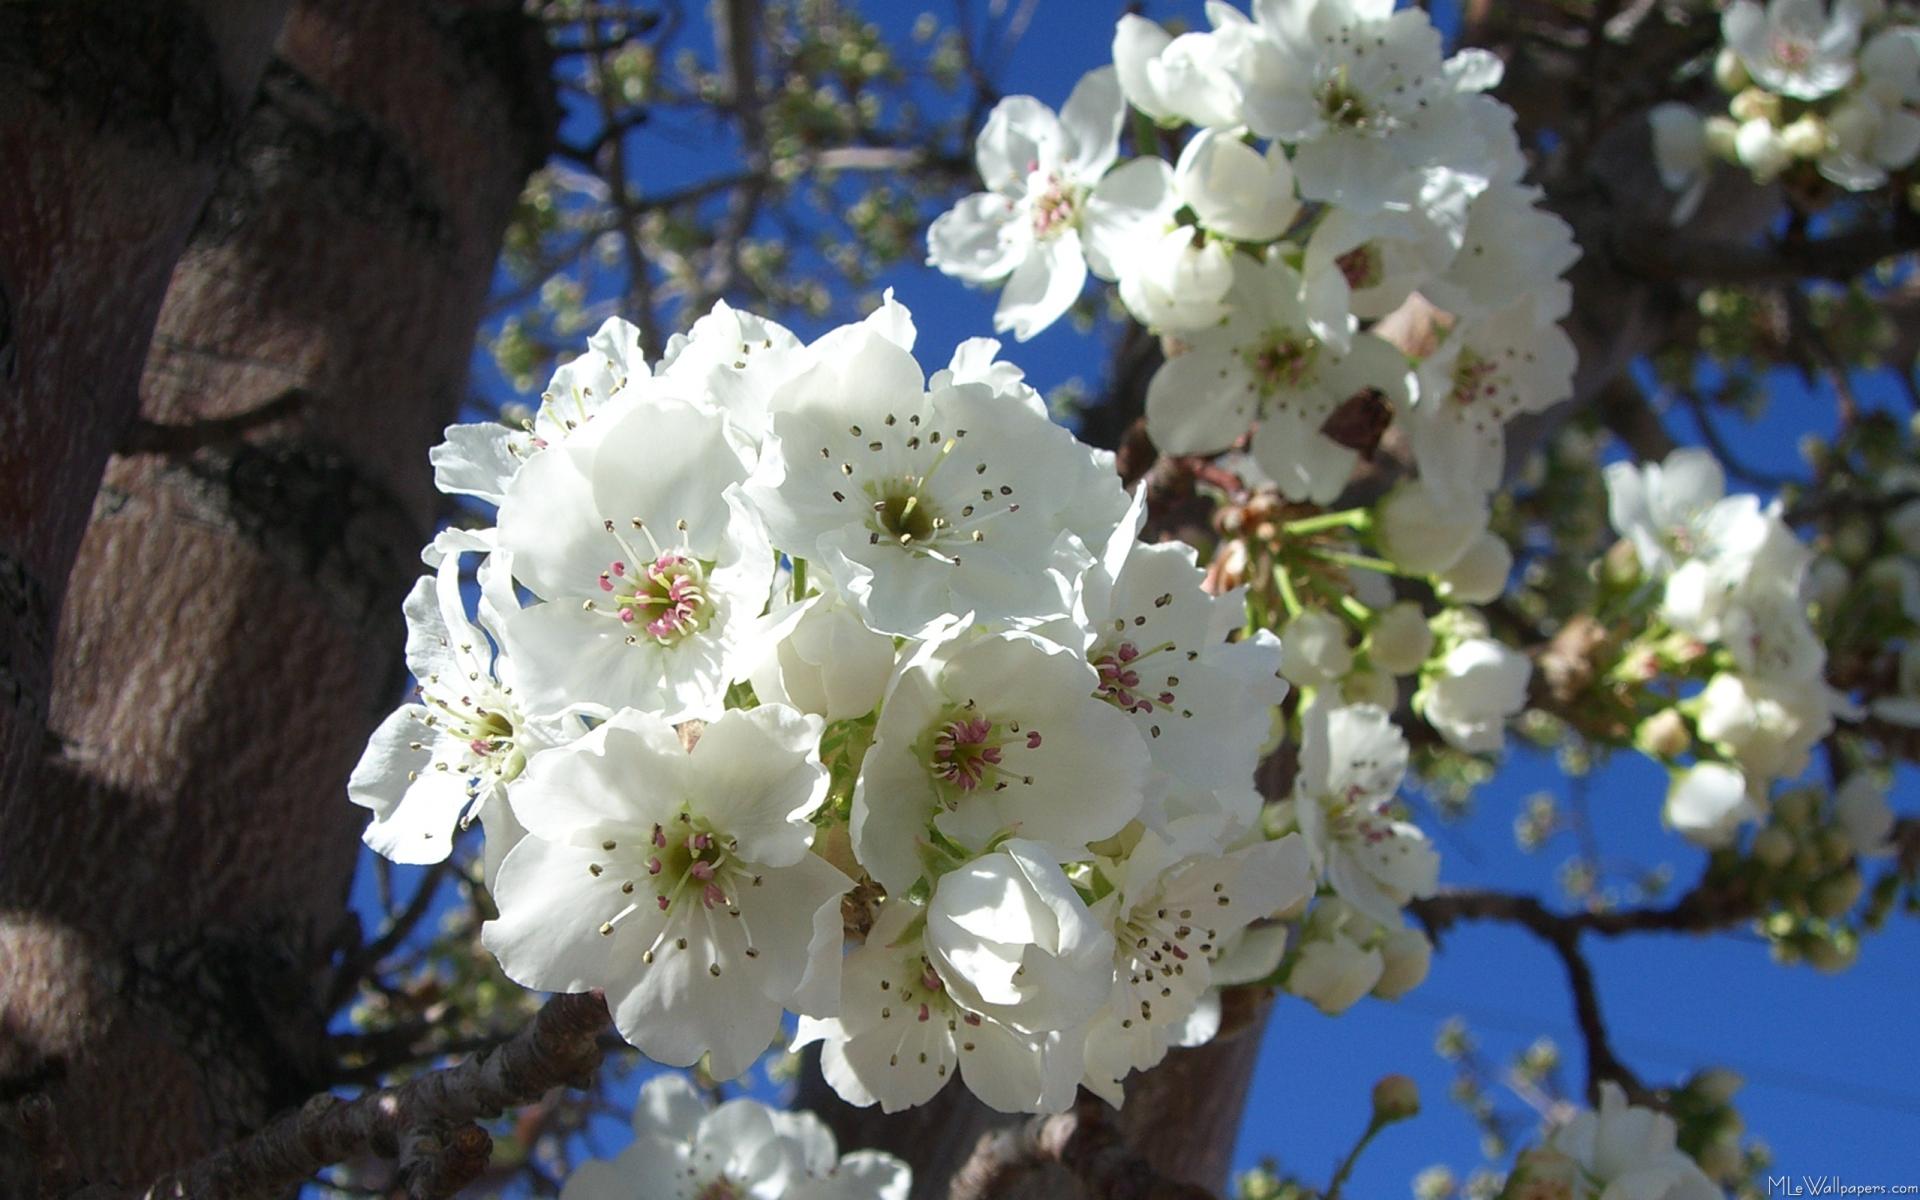 White Blossoms I